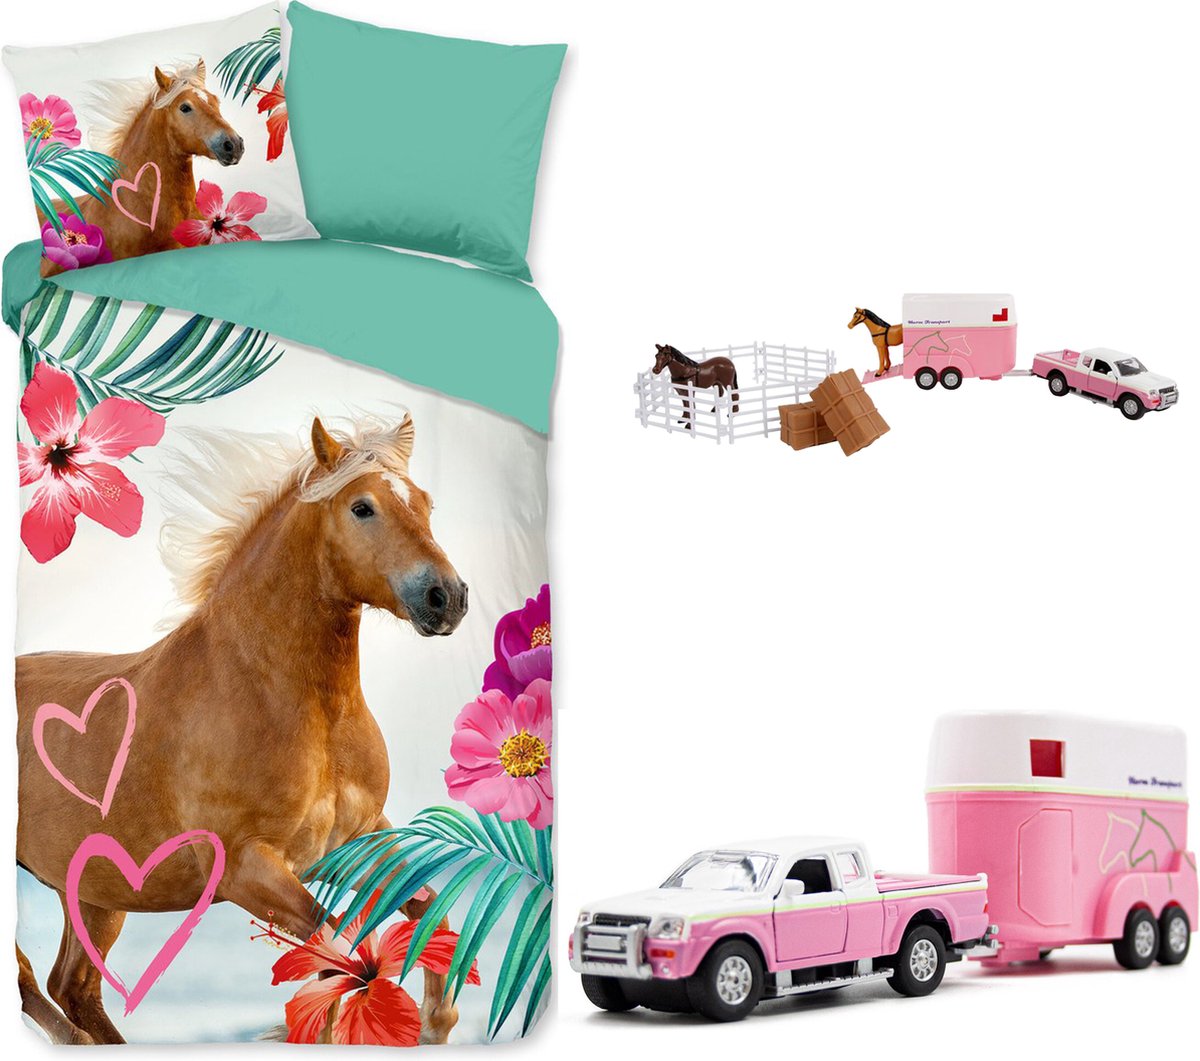 Dekbedovertrek Paard- bruin paard- 140x200/220- 100% polyester- incl. roze paarden speelset !